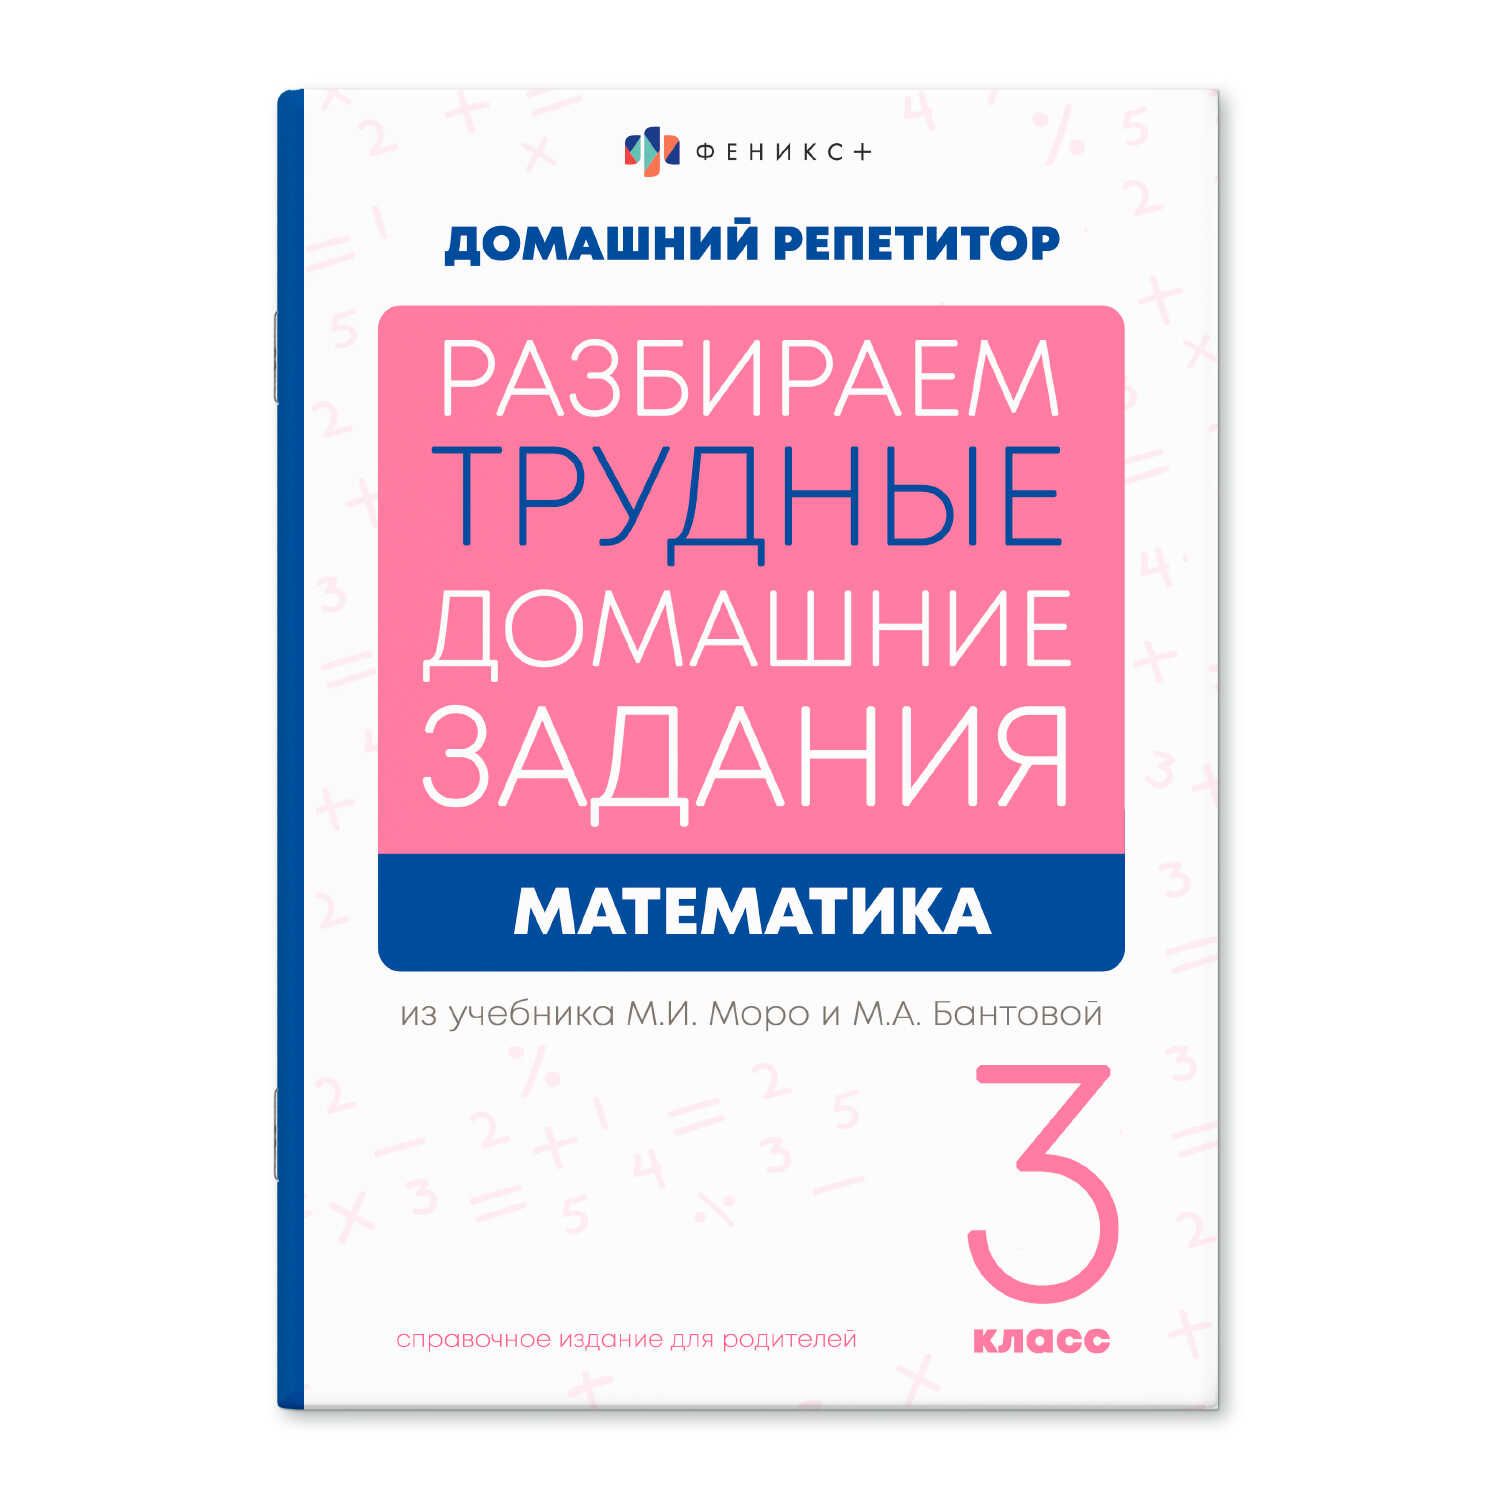 Книга "Домашний репетитор. Математика. 3 класс" А5 48стр.